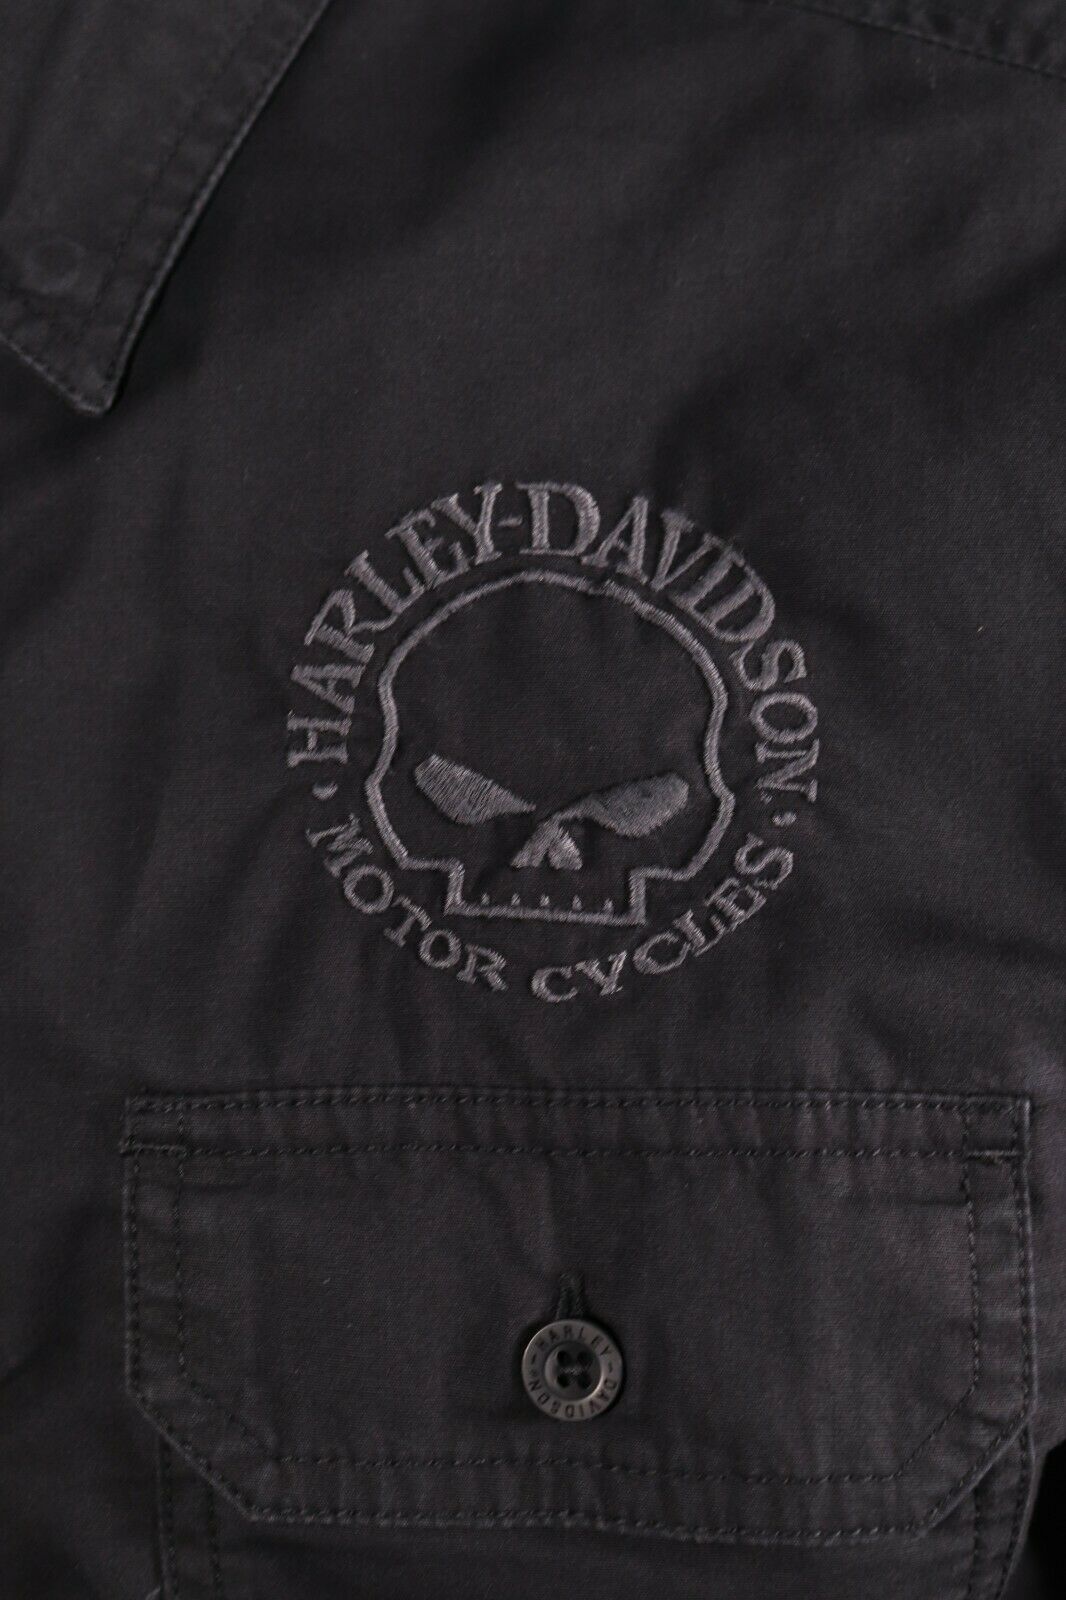 Harley-Davidson Men's Willie G Skull Solid L/S Woven Shirt (S21)